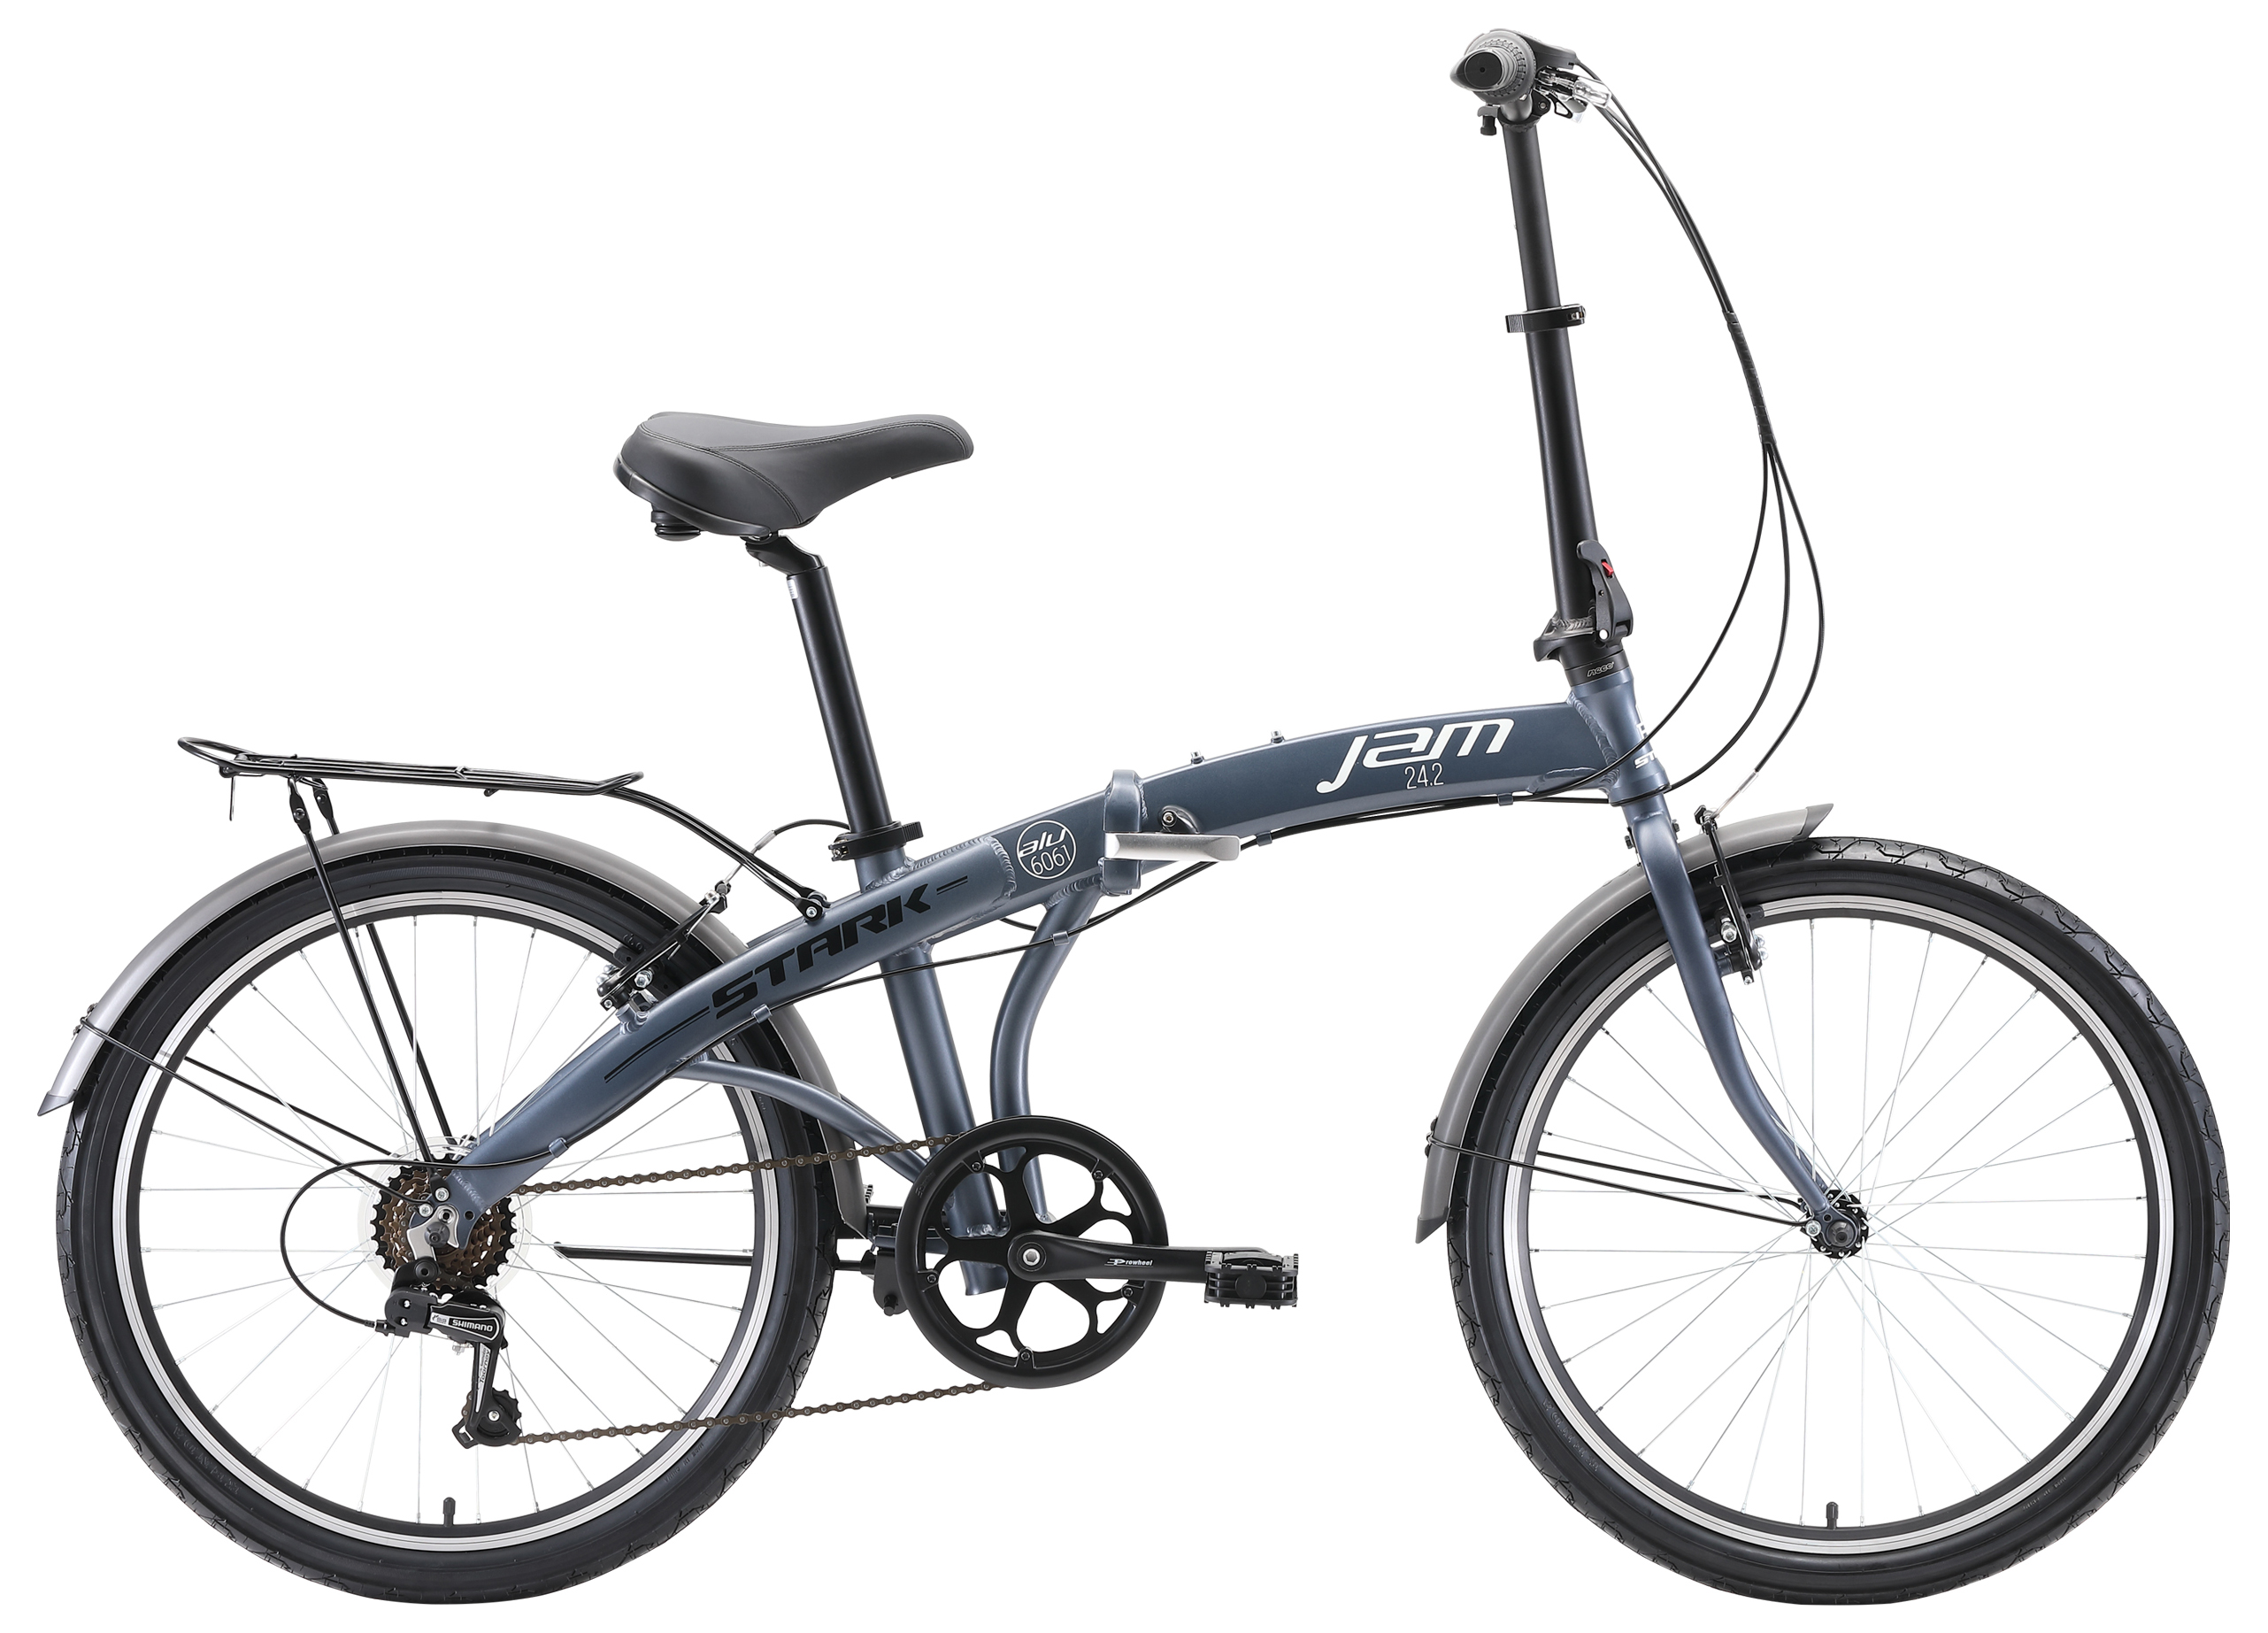  Отзывы о Складном велосипеде Stark Jam 24.2 V 2021